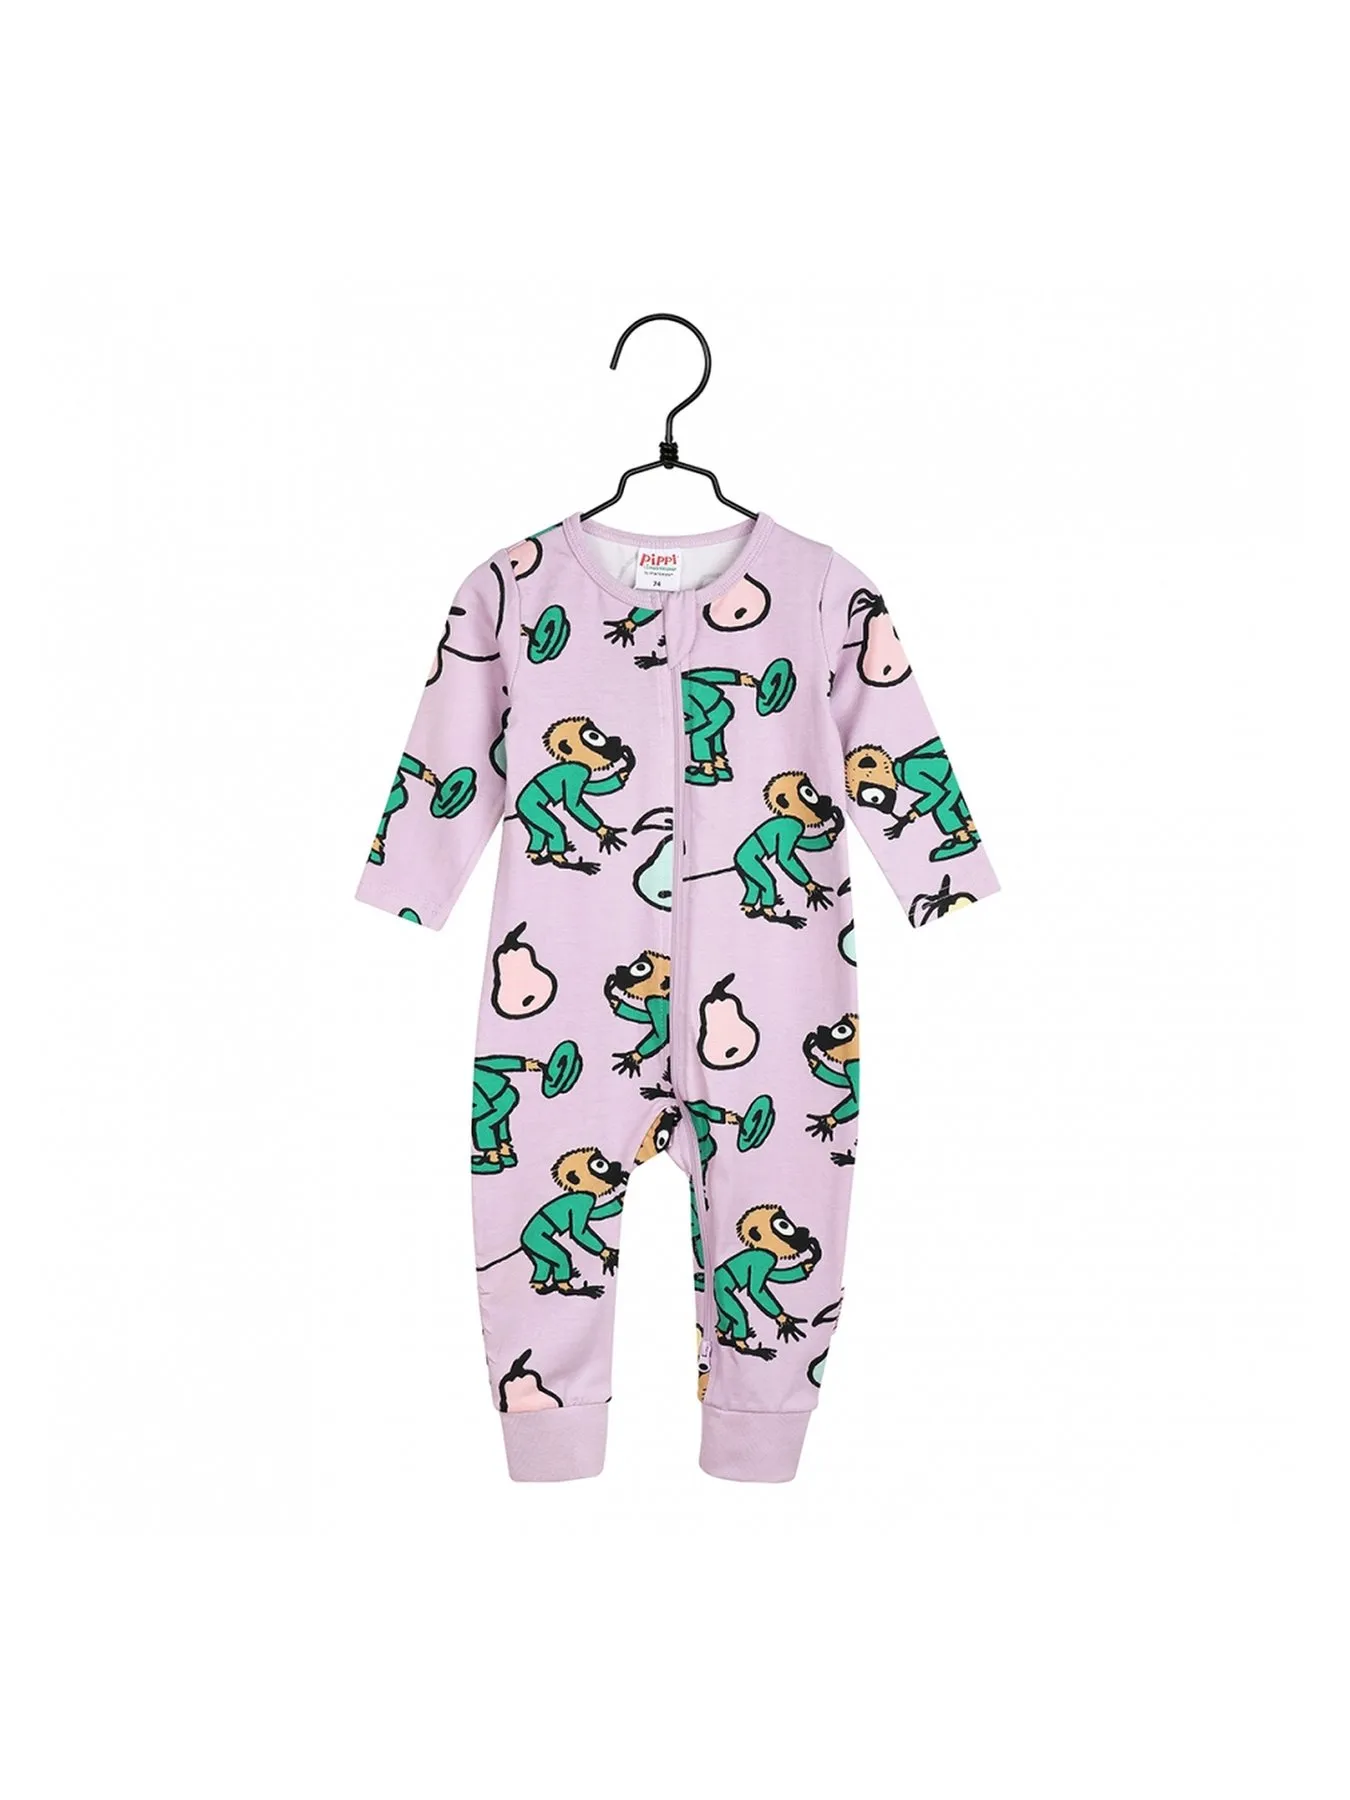 Pyjamas Pippi Långstrump - Lila